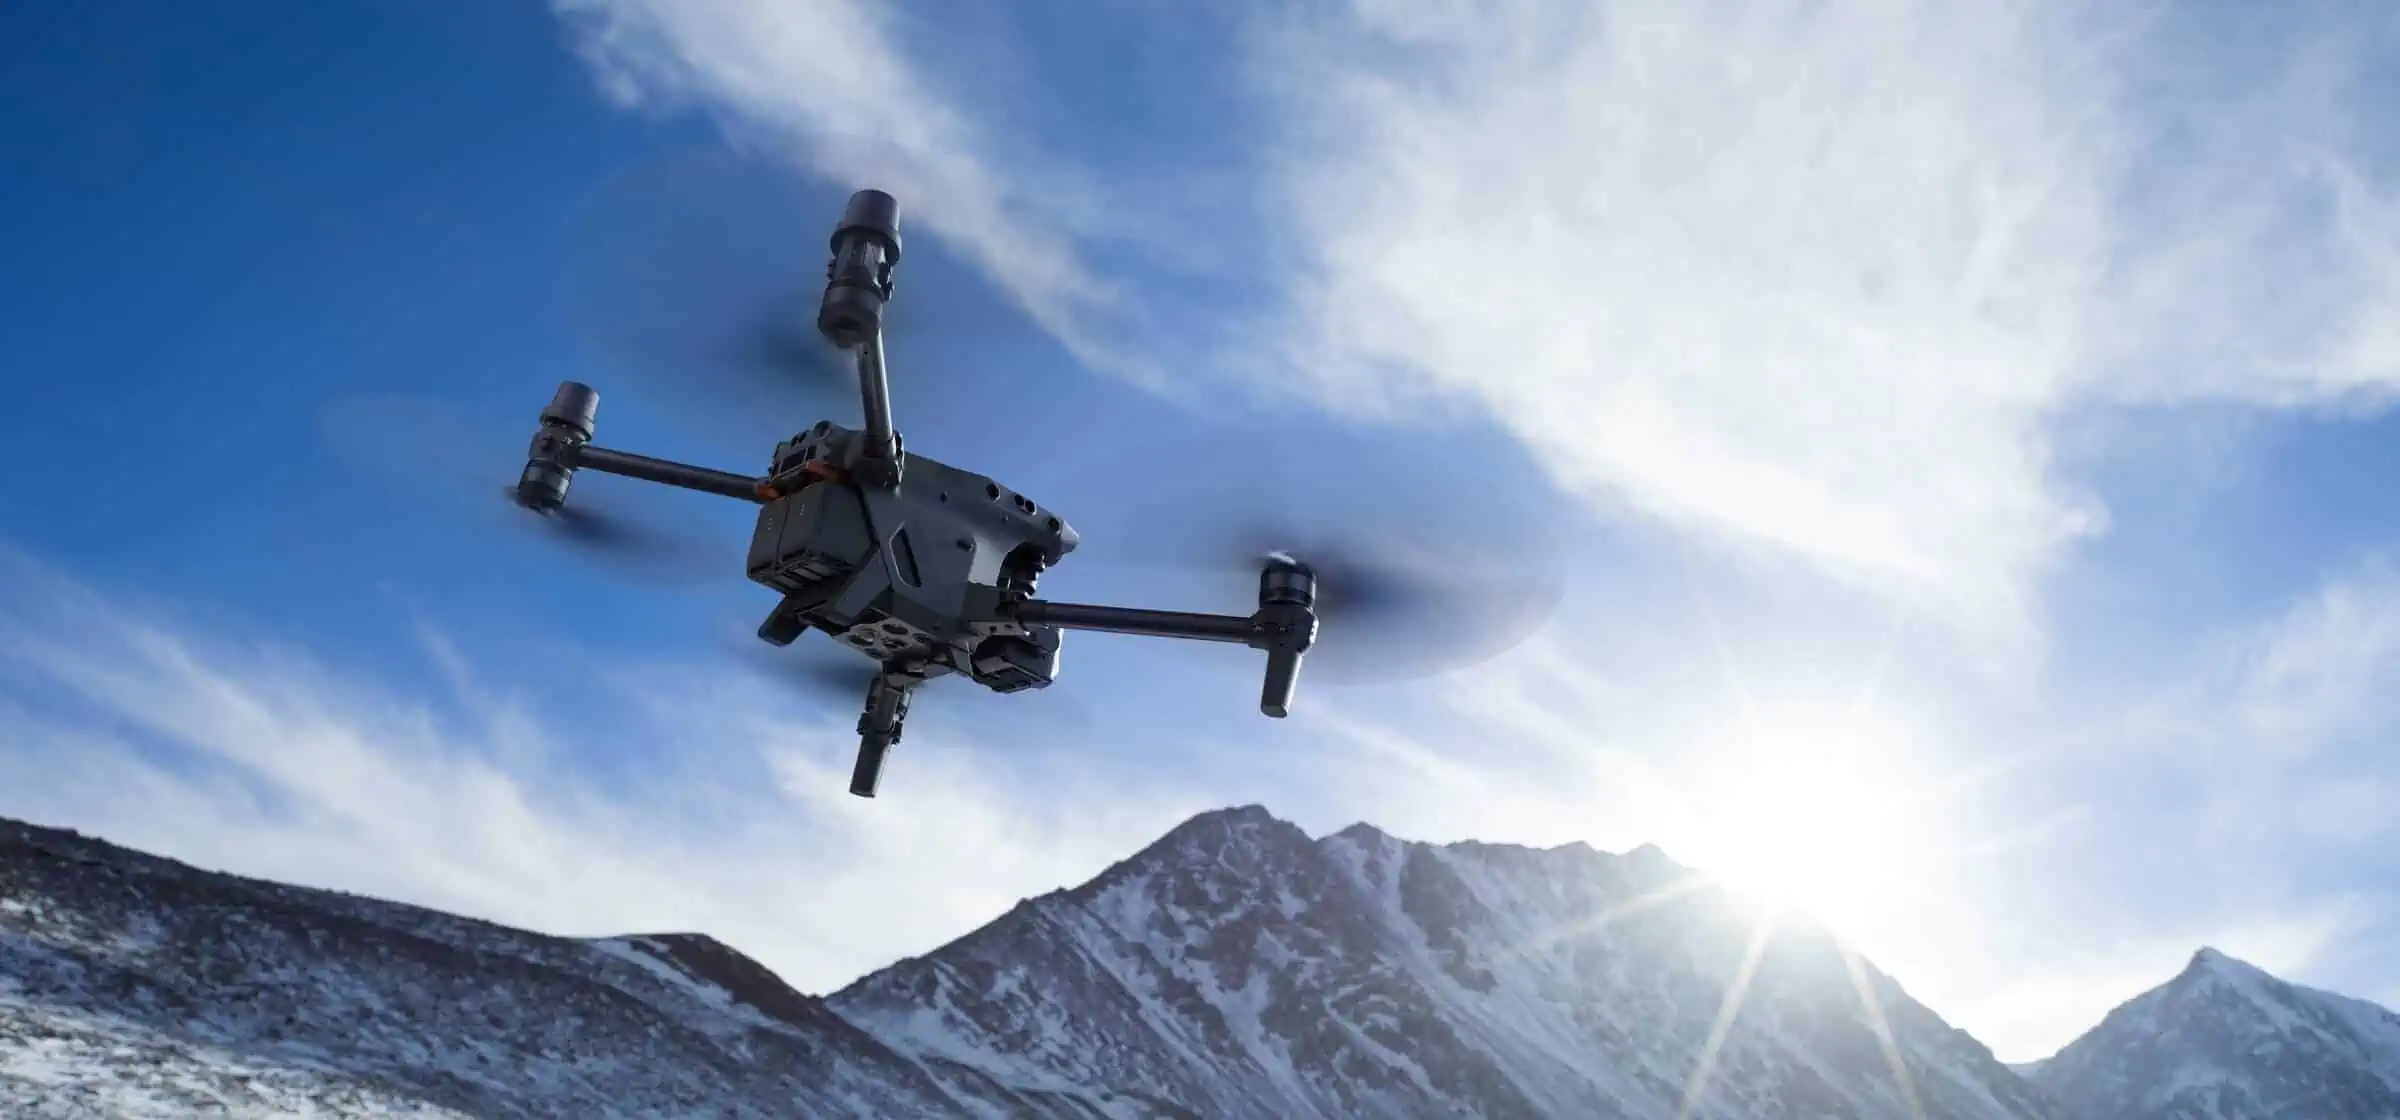 Soccorsi efficienti con droni grazie ad un sistema innovativo